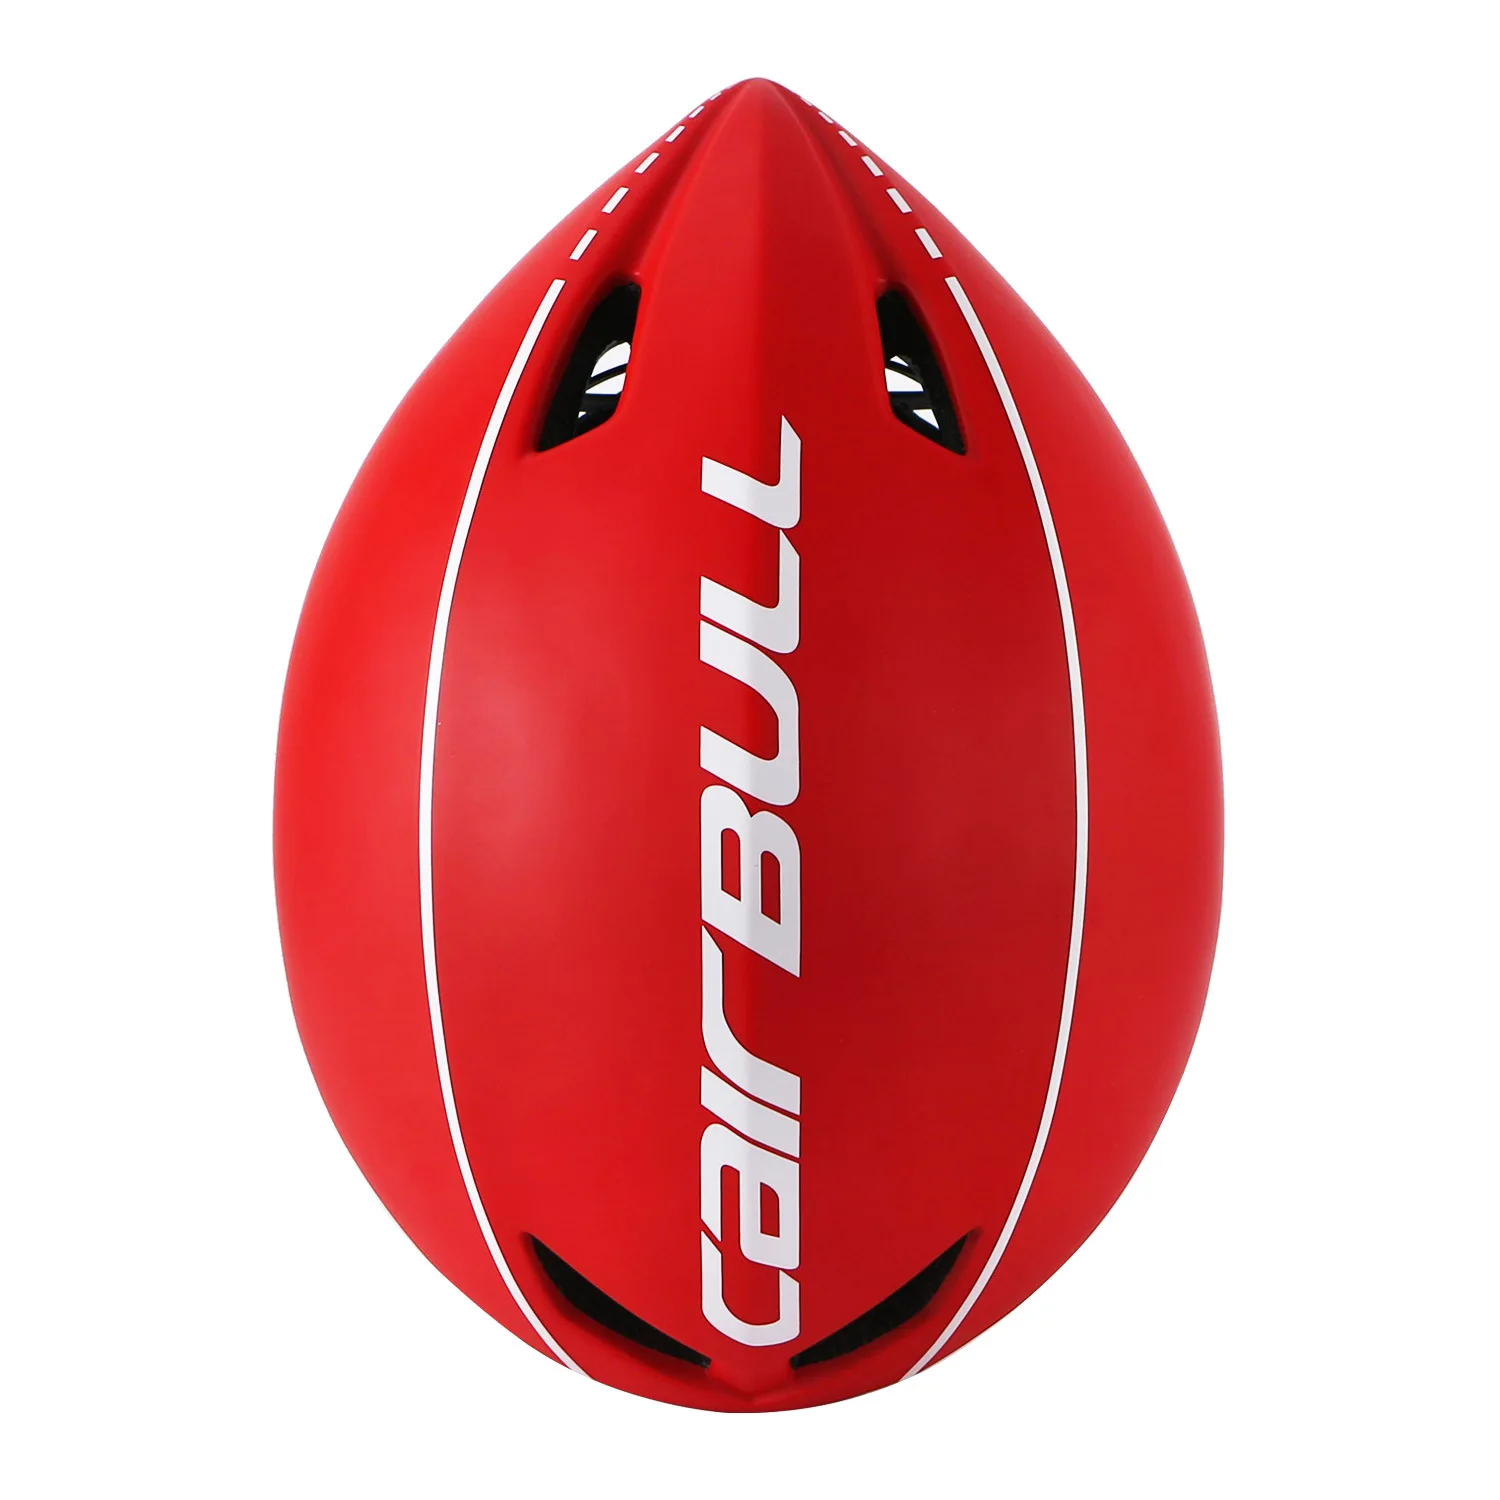 CAIRBULL велосипедный шлем AERO-R1 Магнитные очки дорожный велосипед Профессиональный Пневматический шлем TT езда время-пробный гоночный шлем